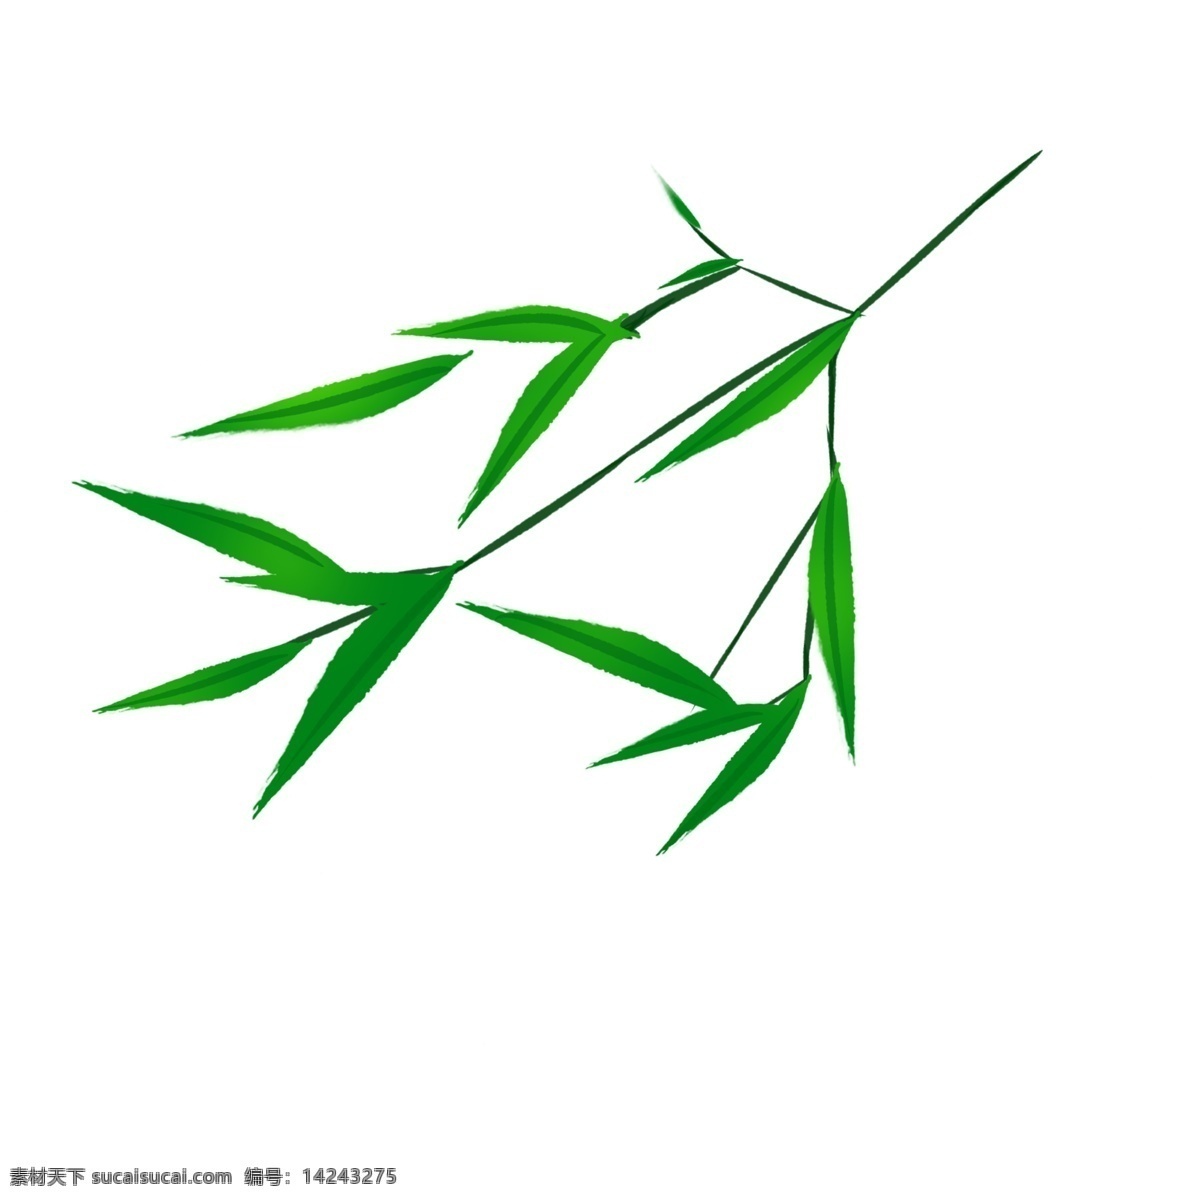 清新 脱俗 竹叶 插画 竹子 叶子 绿色叶子 竹叶插图 竹子叶子 绿色竹叶 绿竹叶